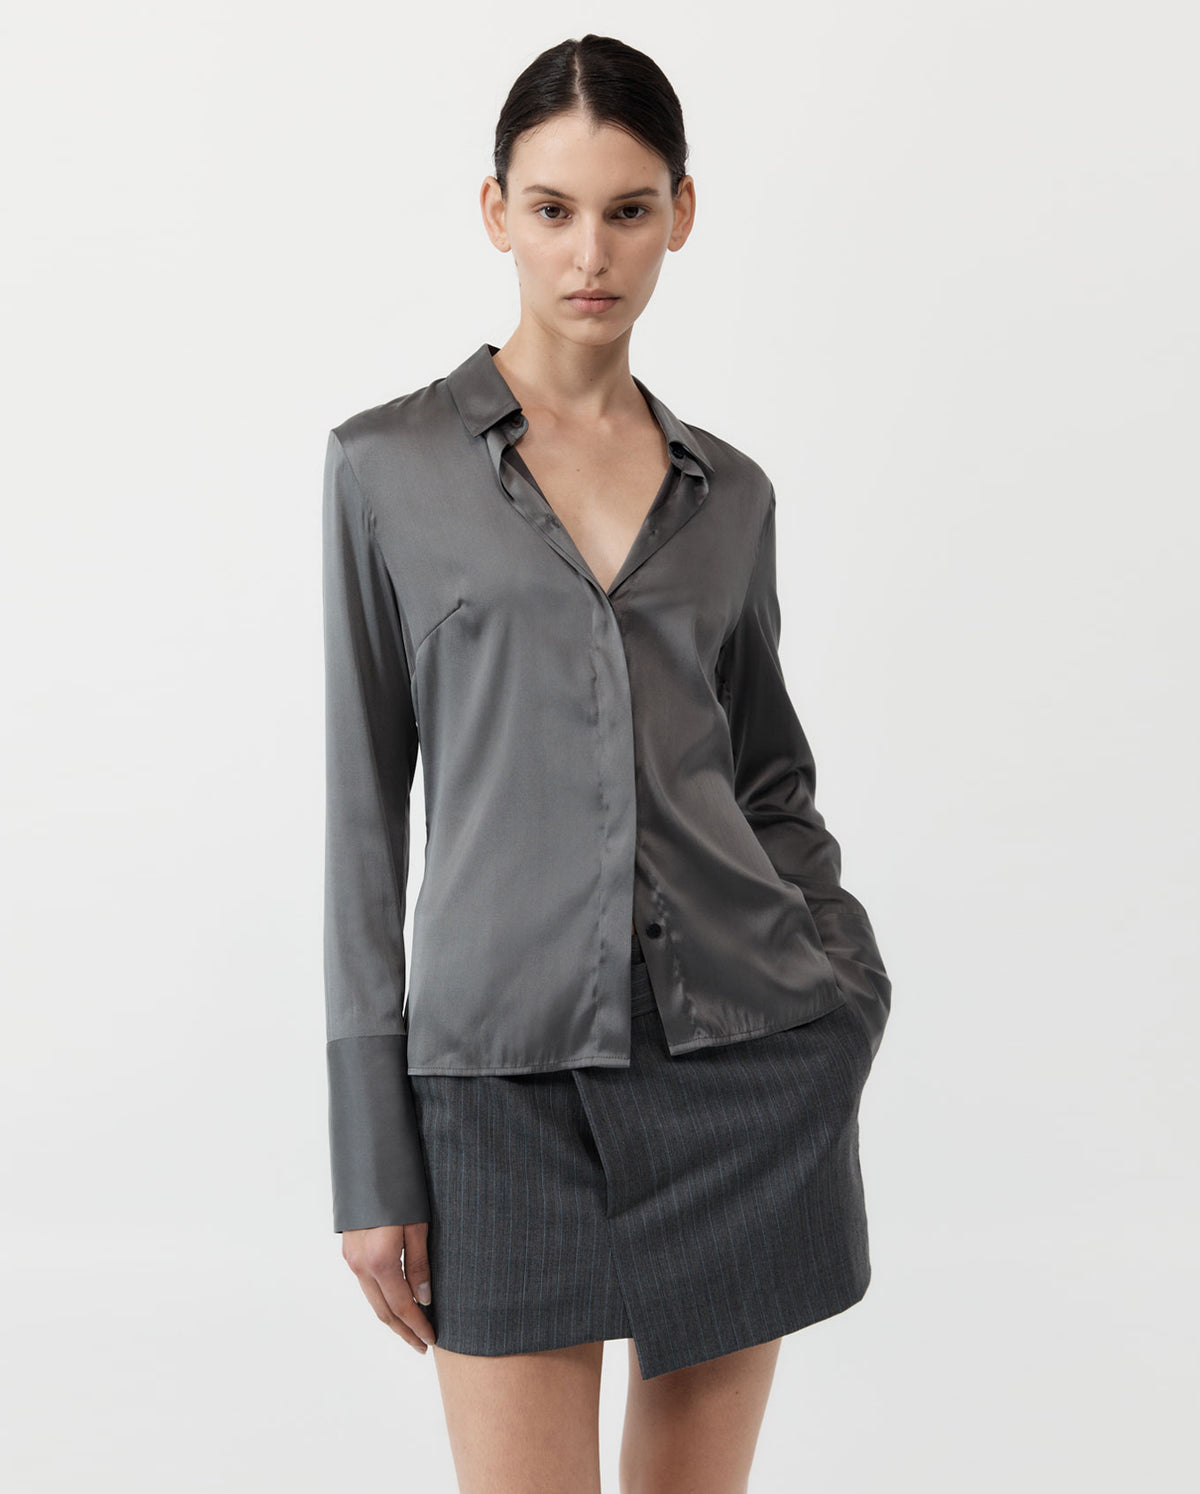 Soft Silk Shirt - Pewter Grey